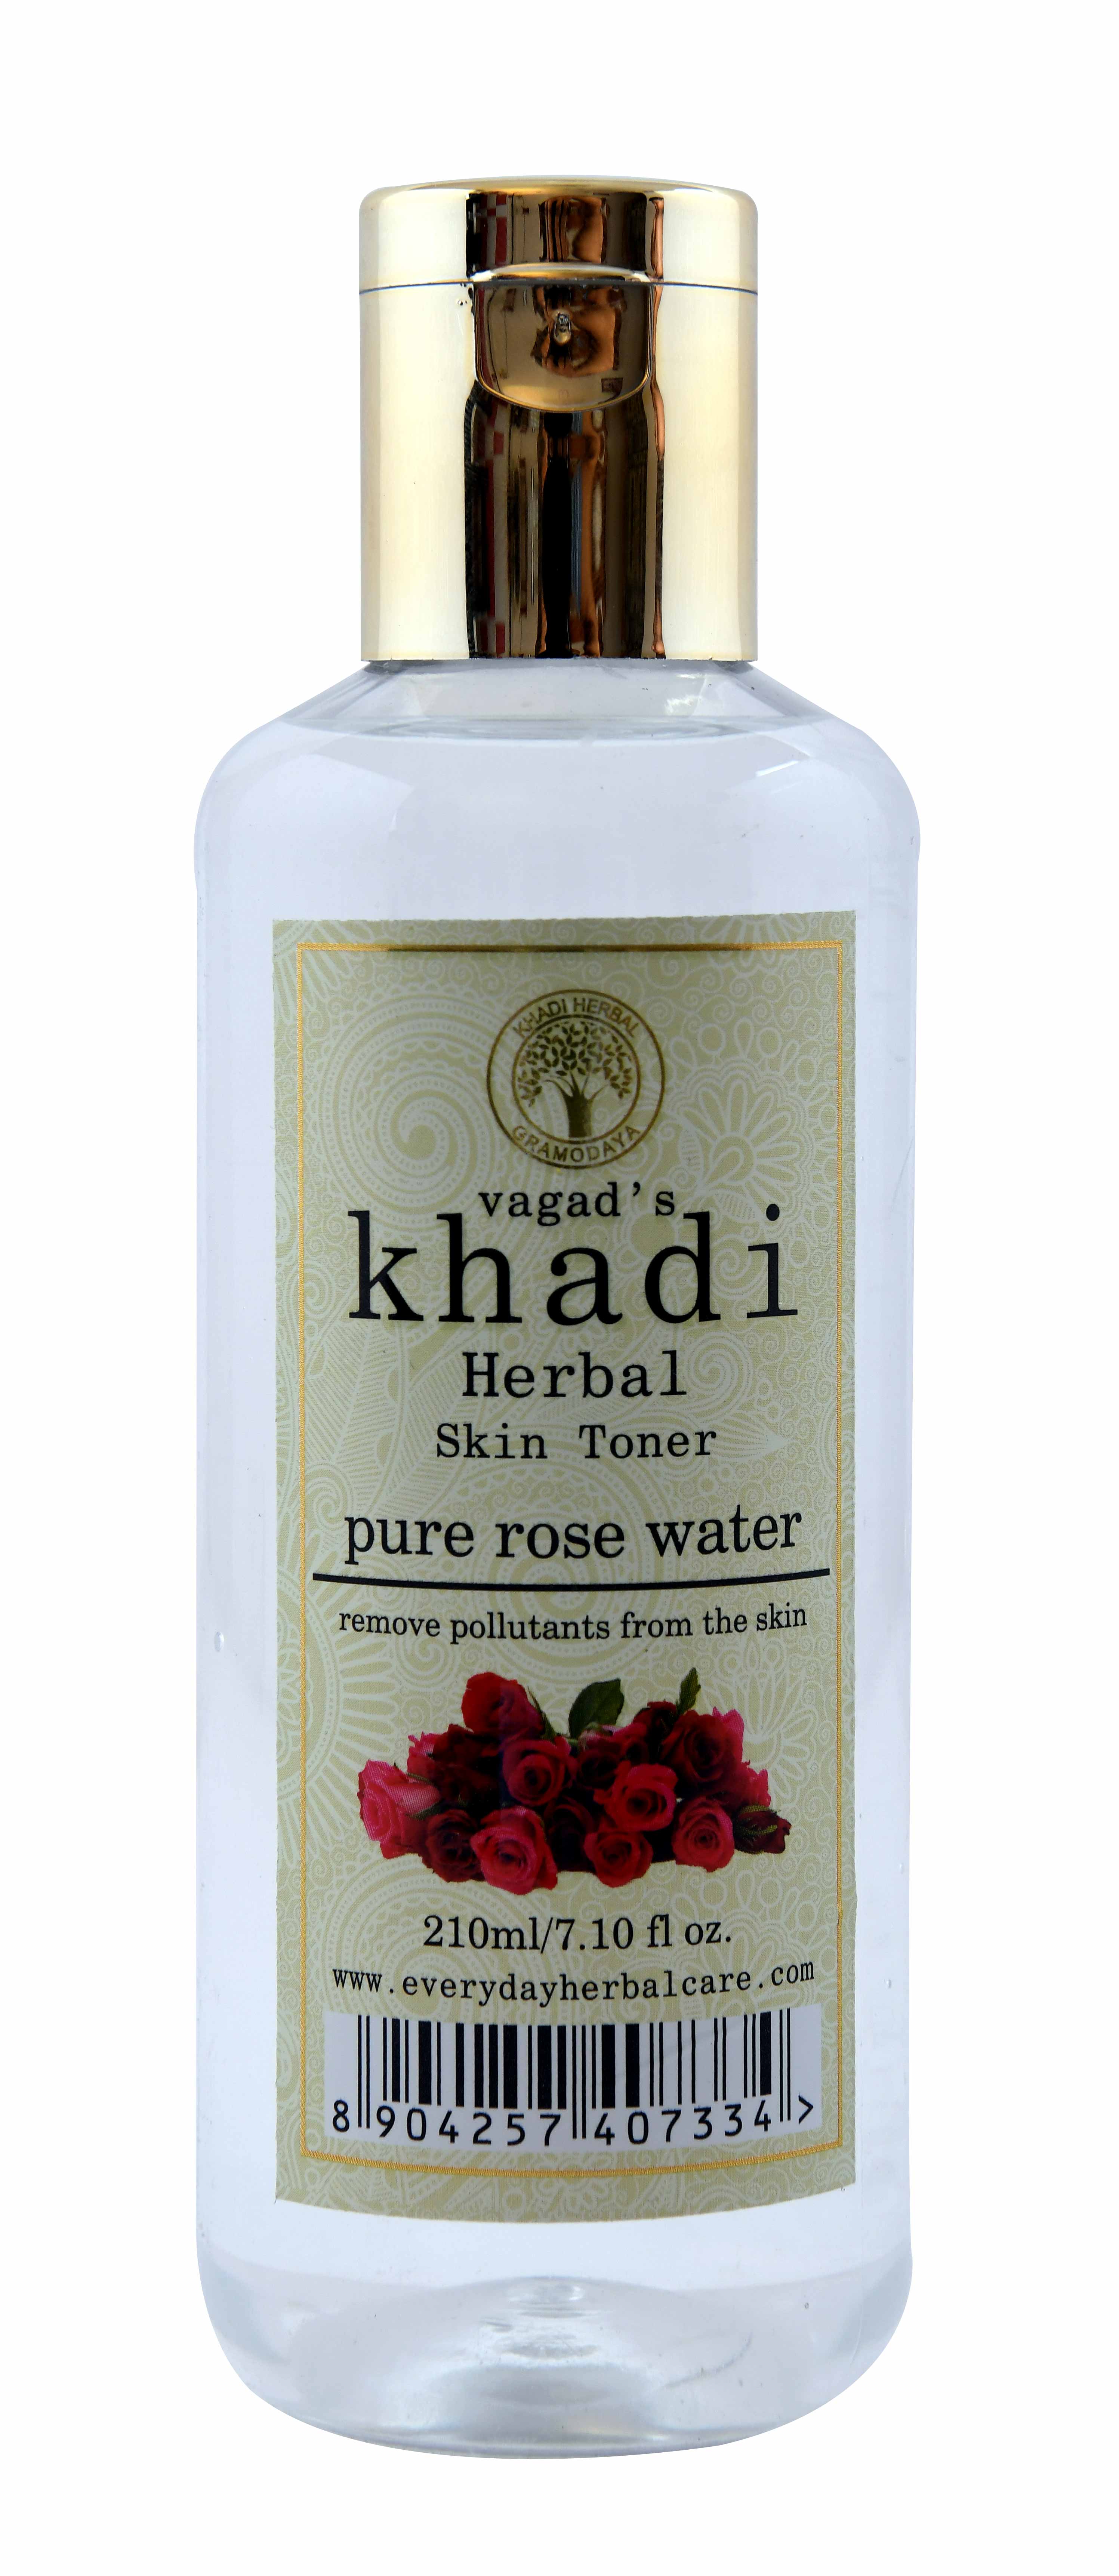 Buy Vagad's Khadi Natural Rose Water at Best Price Online